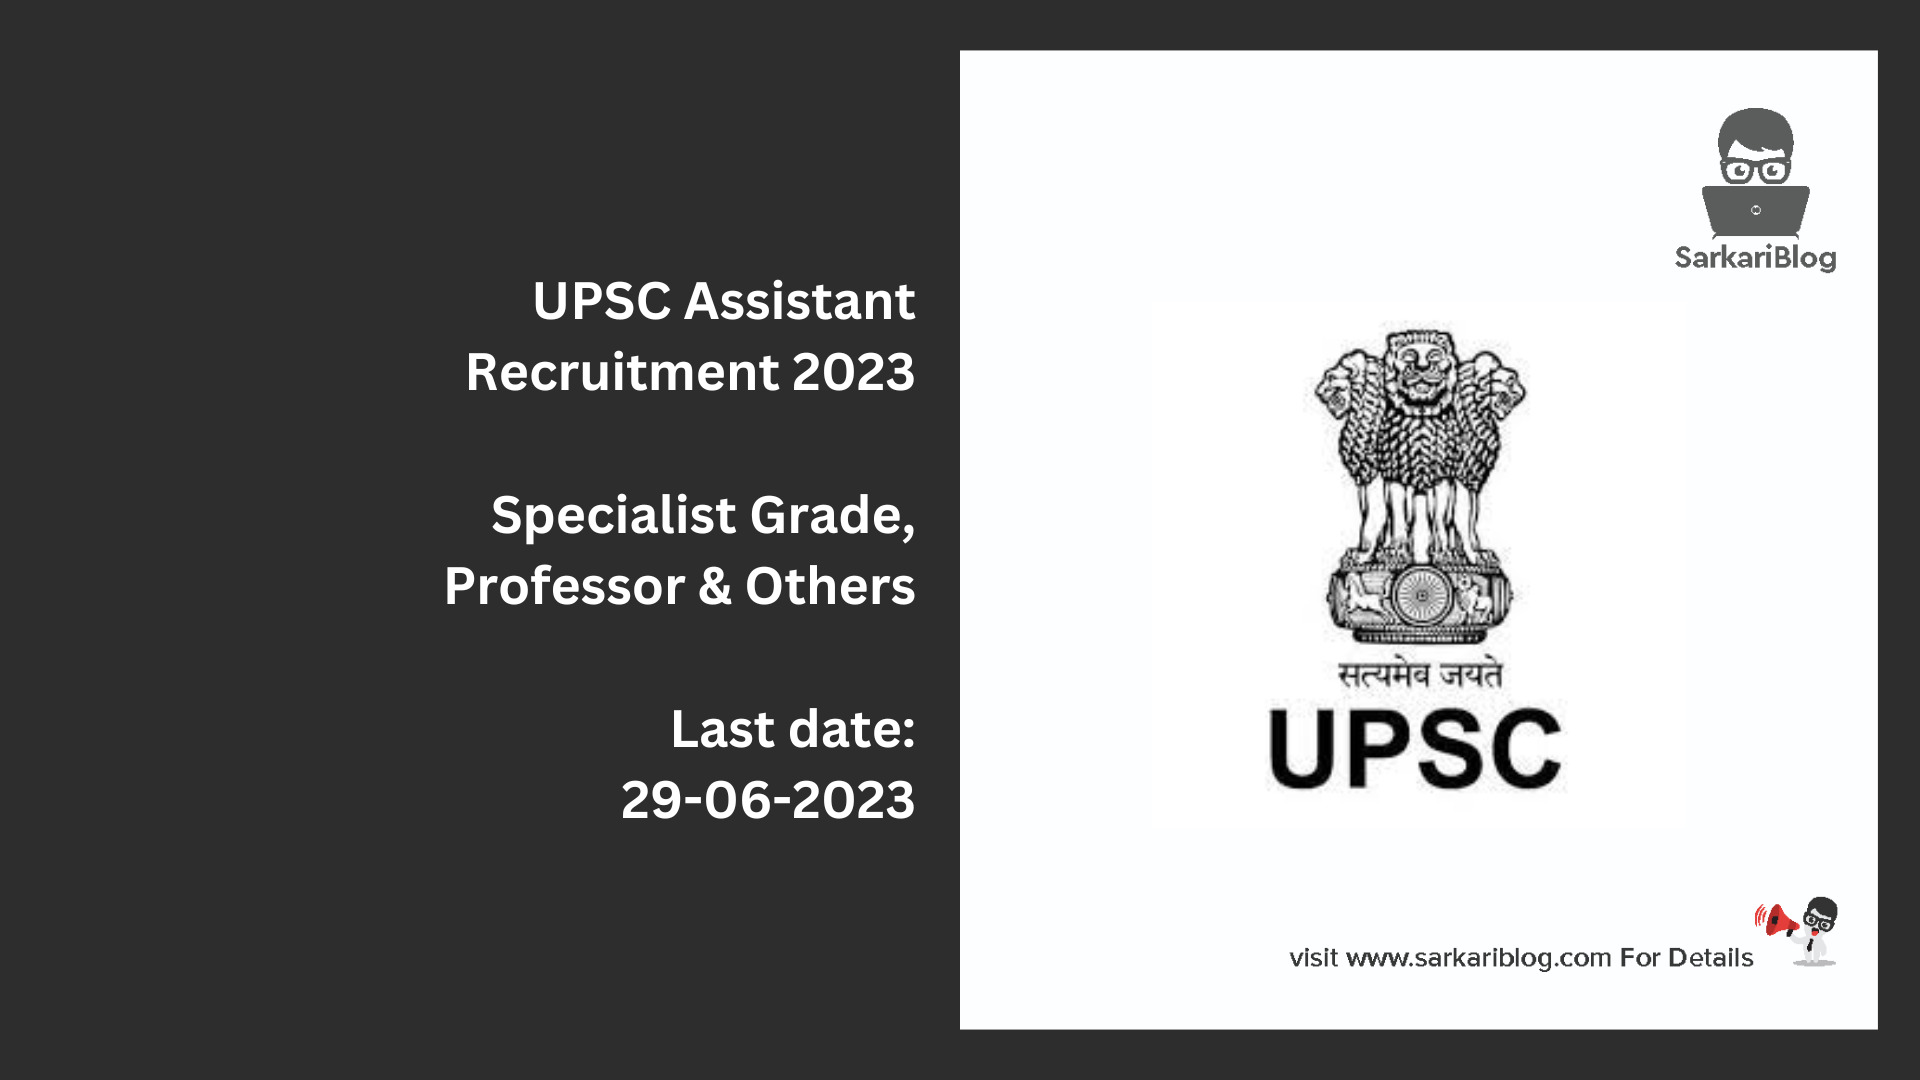 UPSC Assistant Recruitment 2023